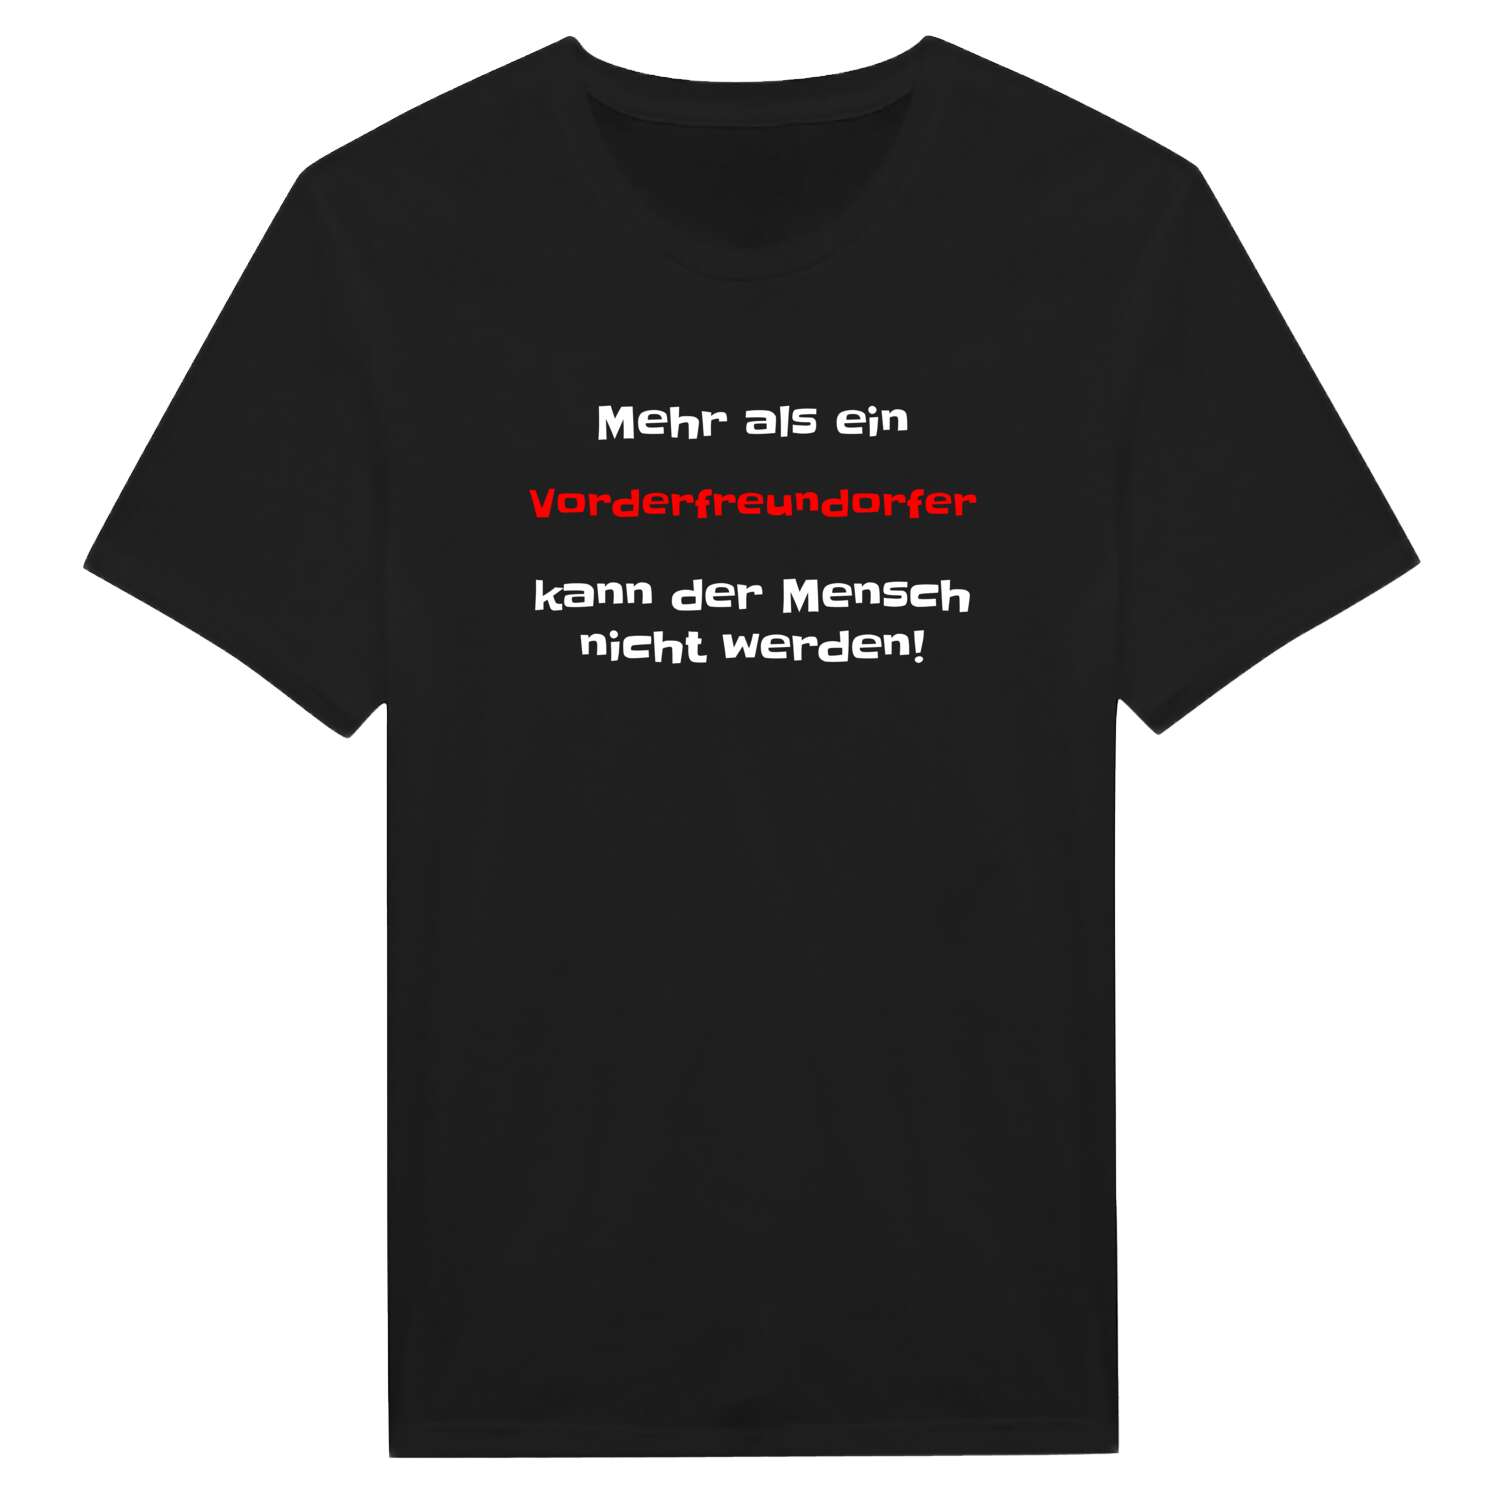 Vorderfreundorf T-Shirt »Mehr als ein«